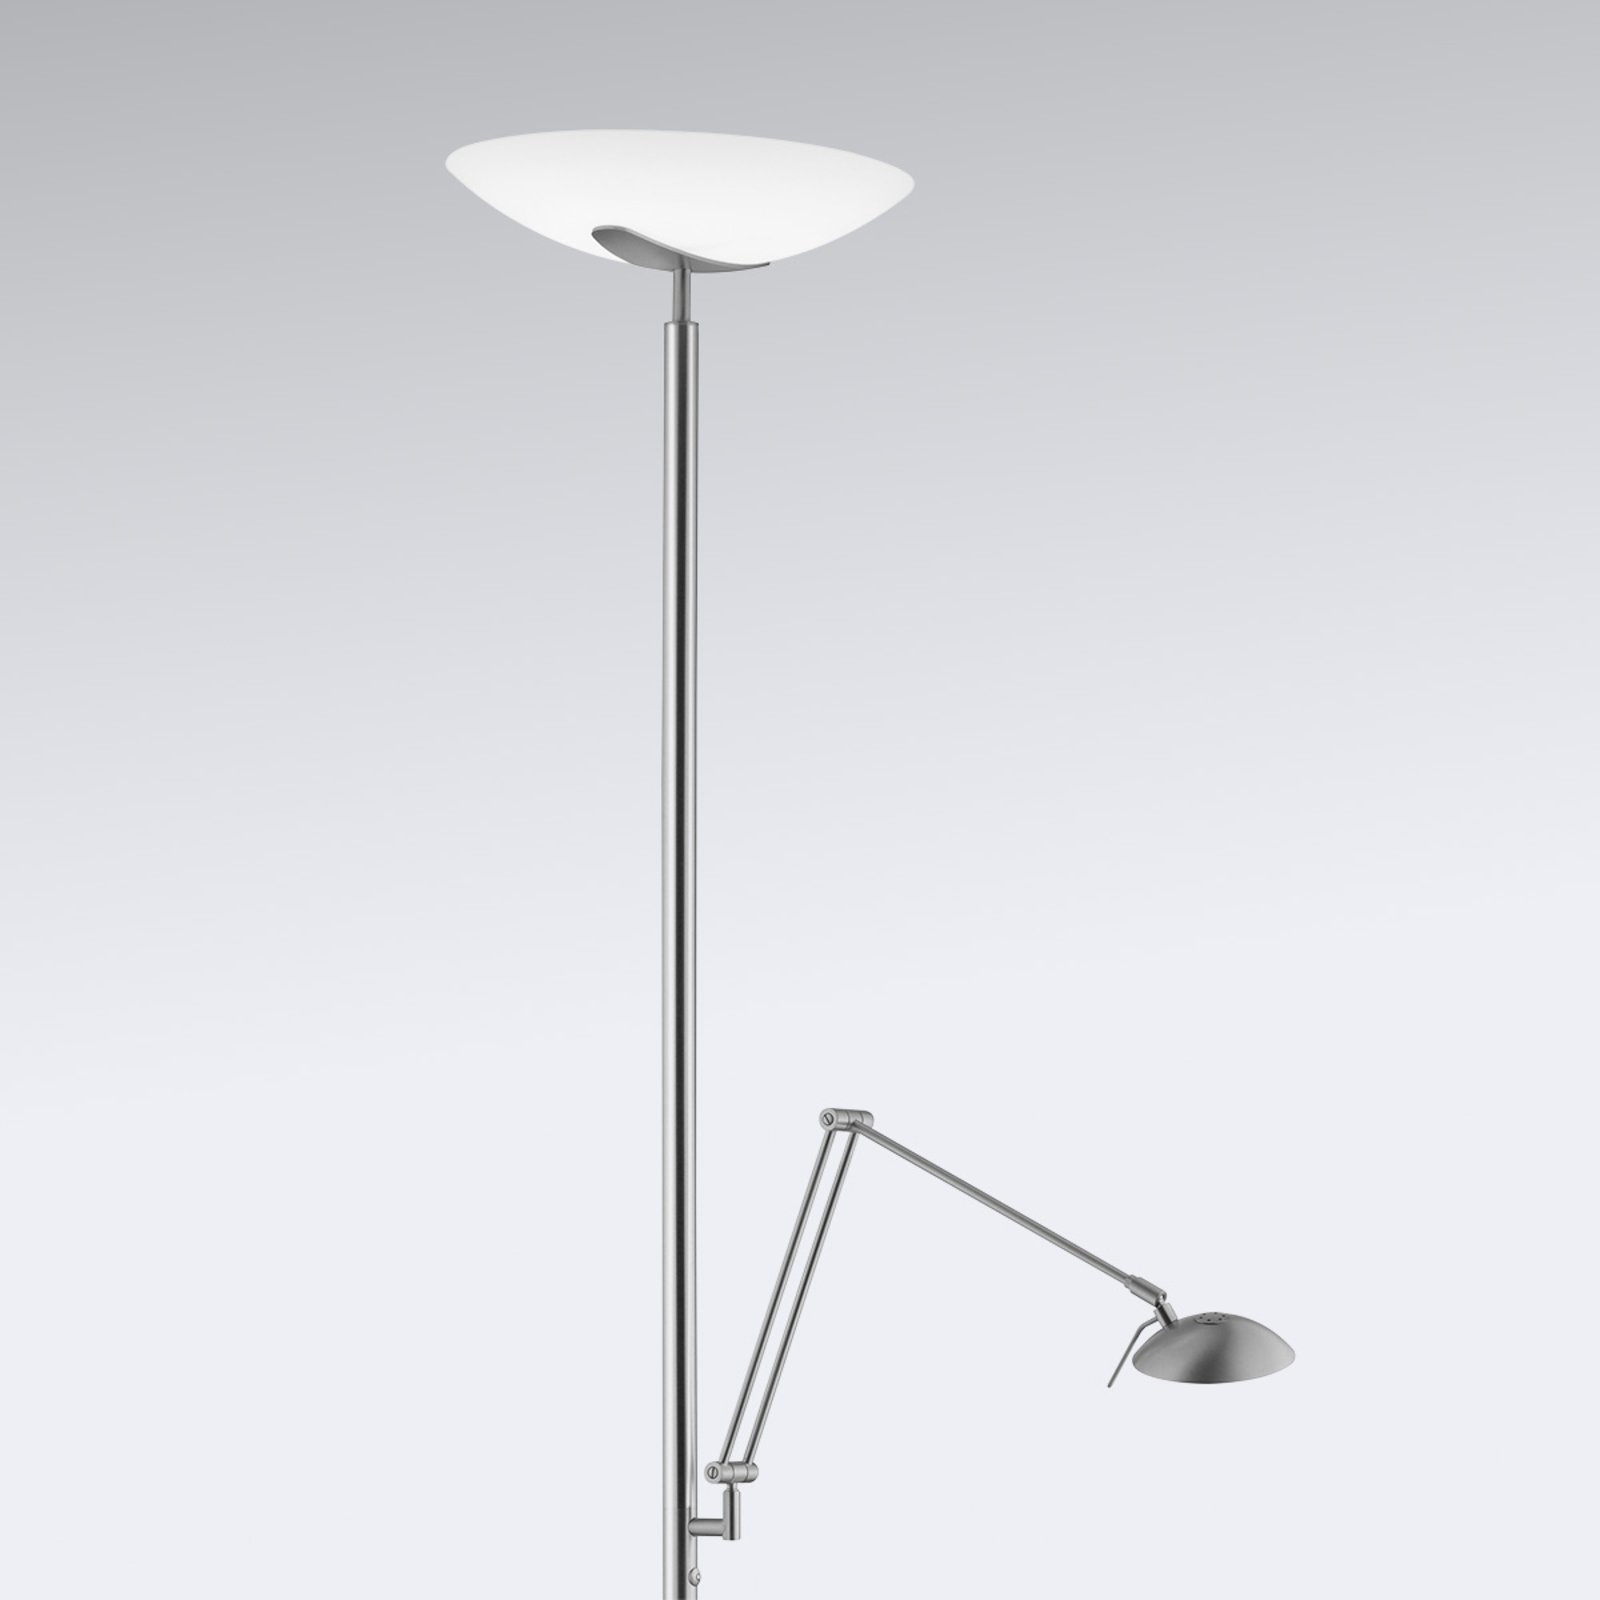 LED uplighter vloerlamp Lya met leeslamp in nikkel-chroom